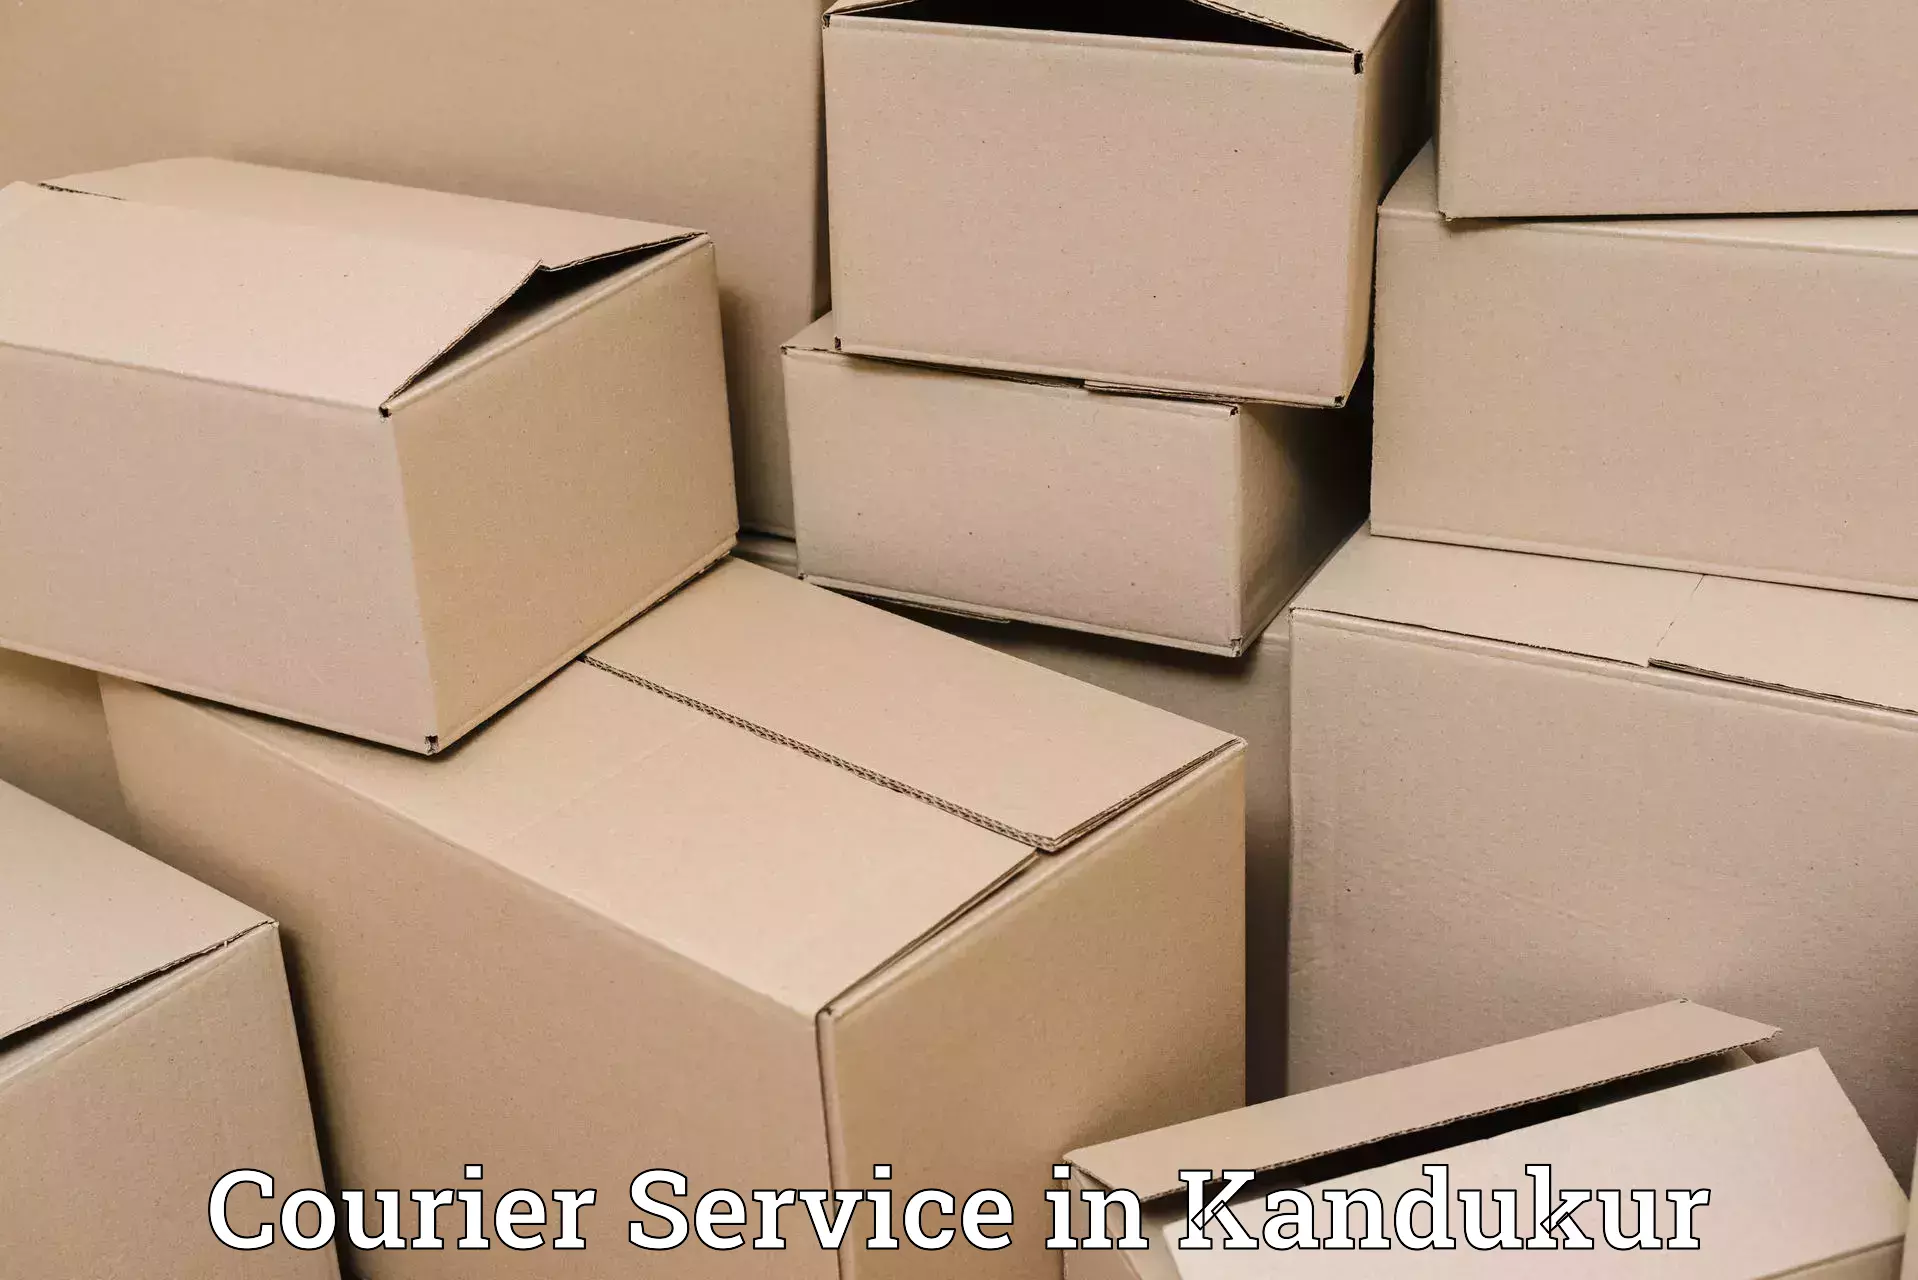 Specialized shipment handling in Kandukur